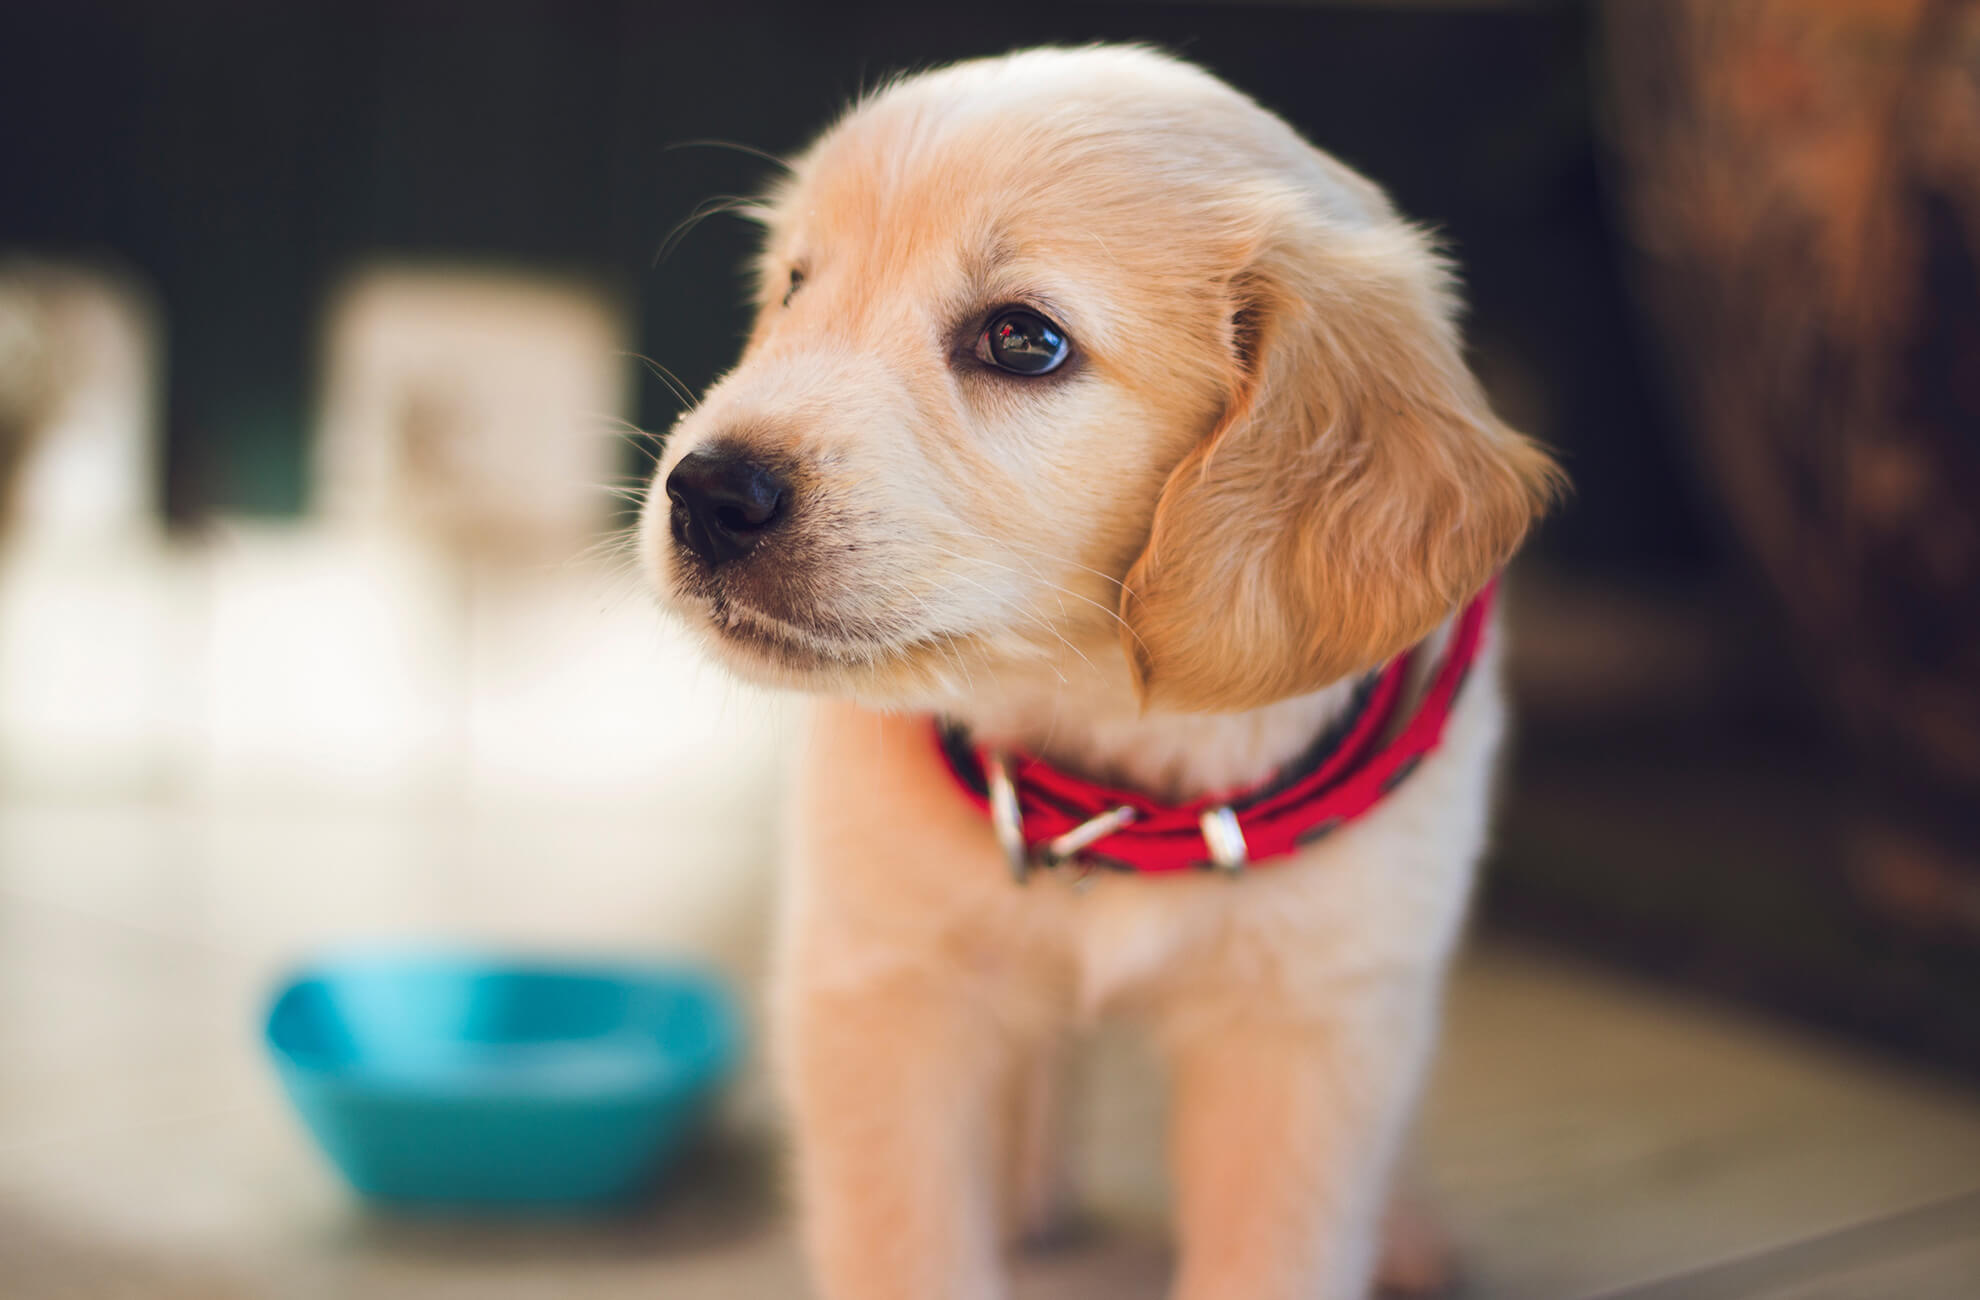 A cute golden labrador puppy